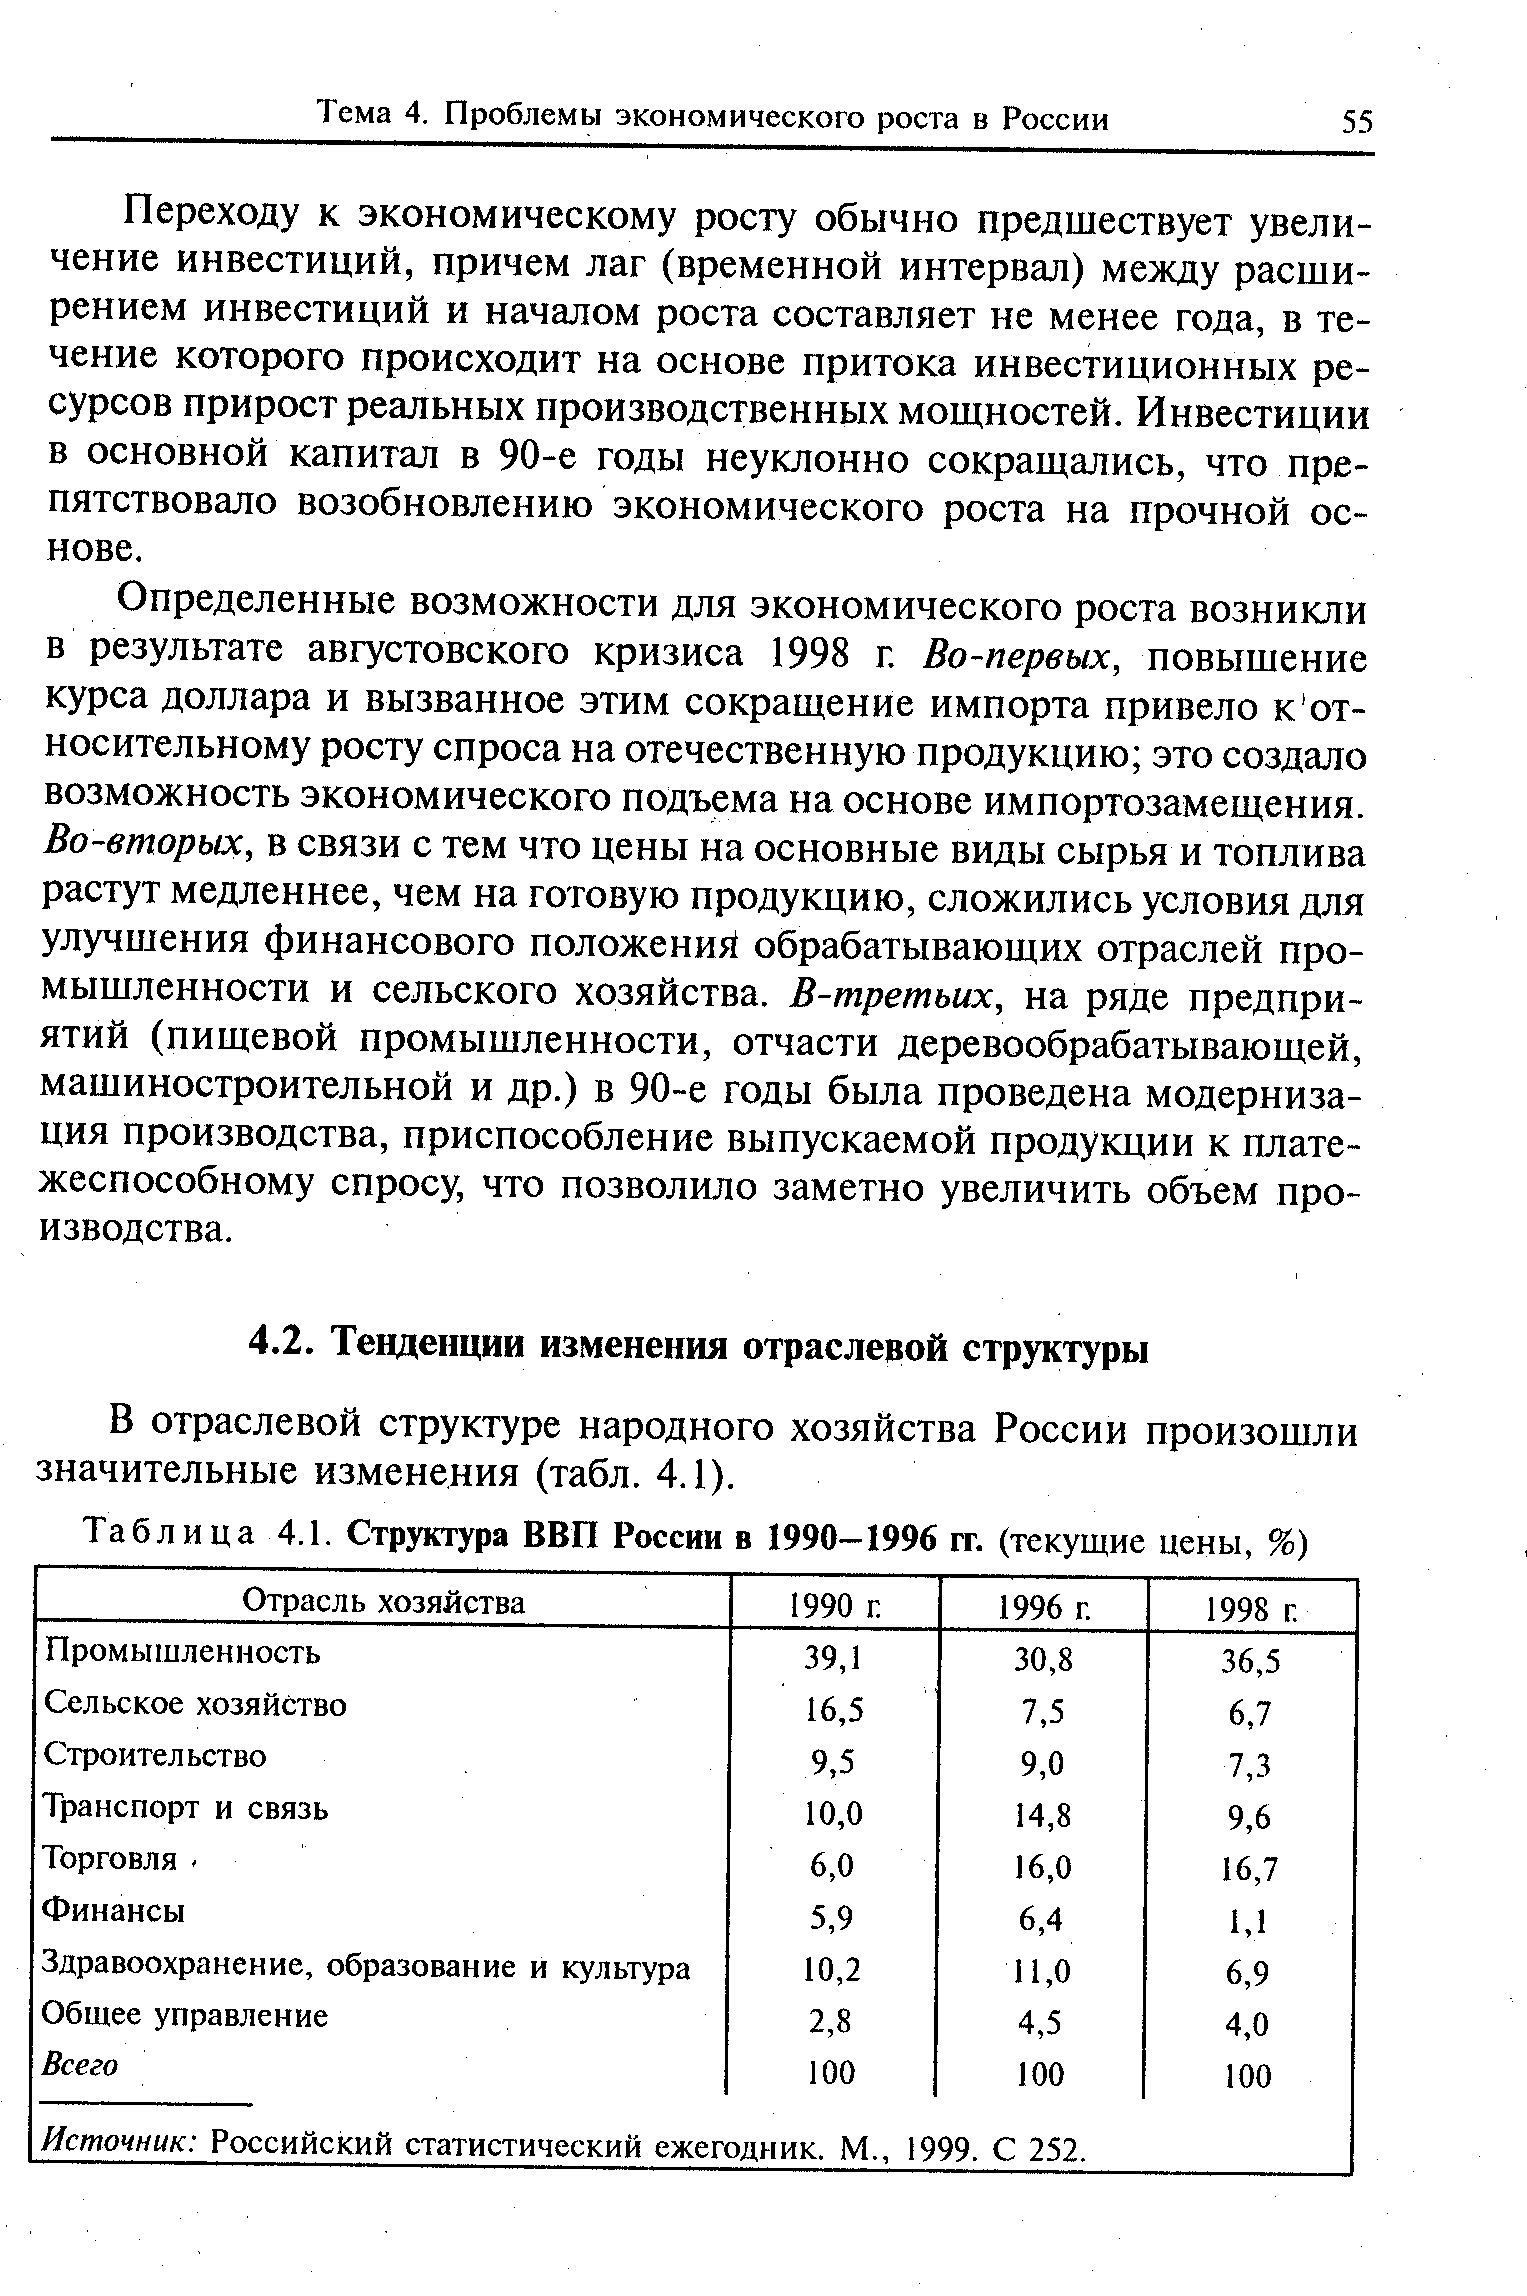 В отраслевой структуре народного хозяйства России произошли значительные изменения (табл. 4.1).
